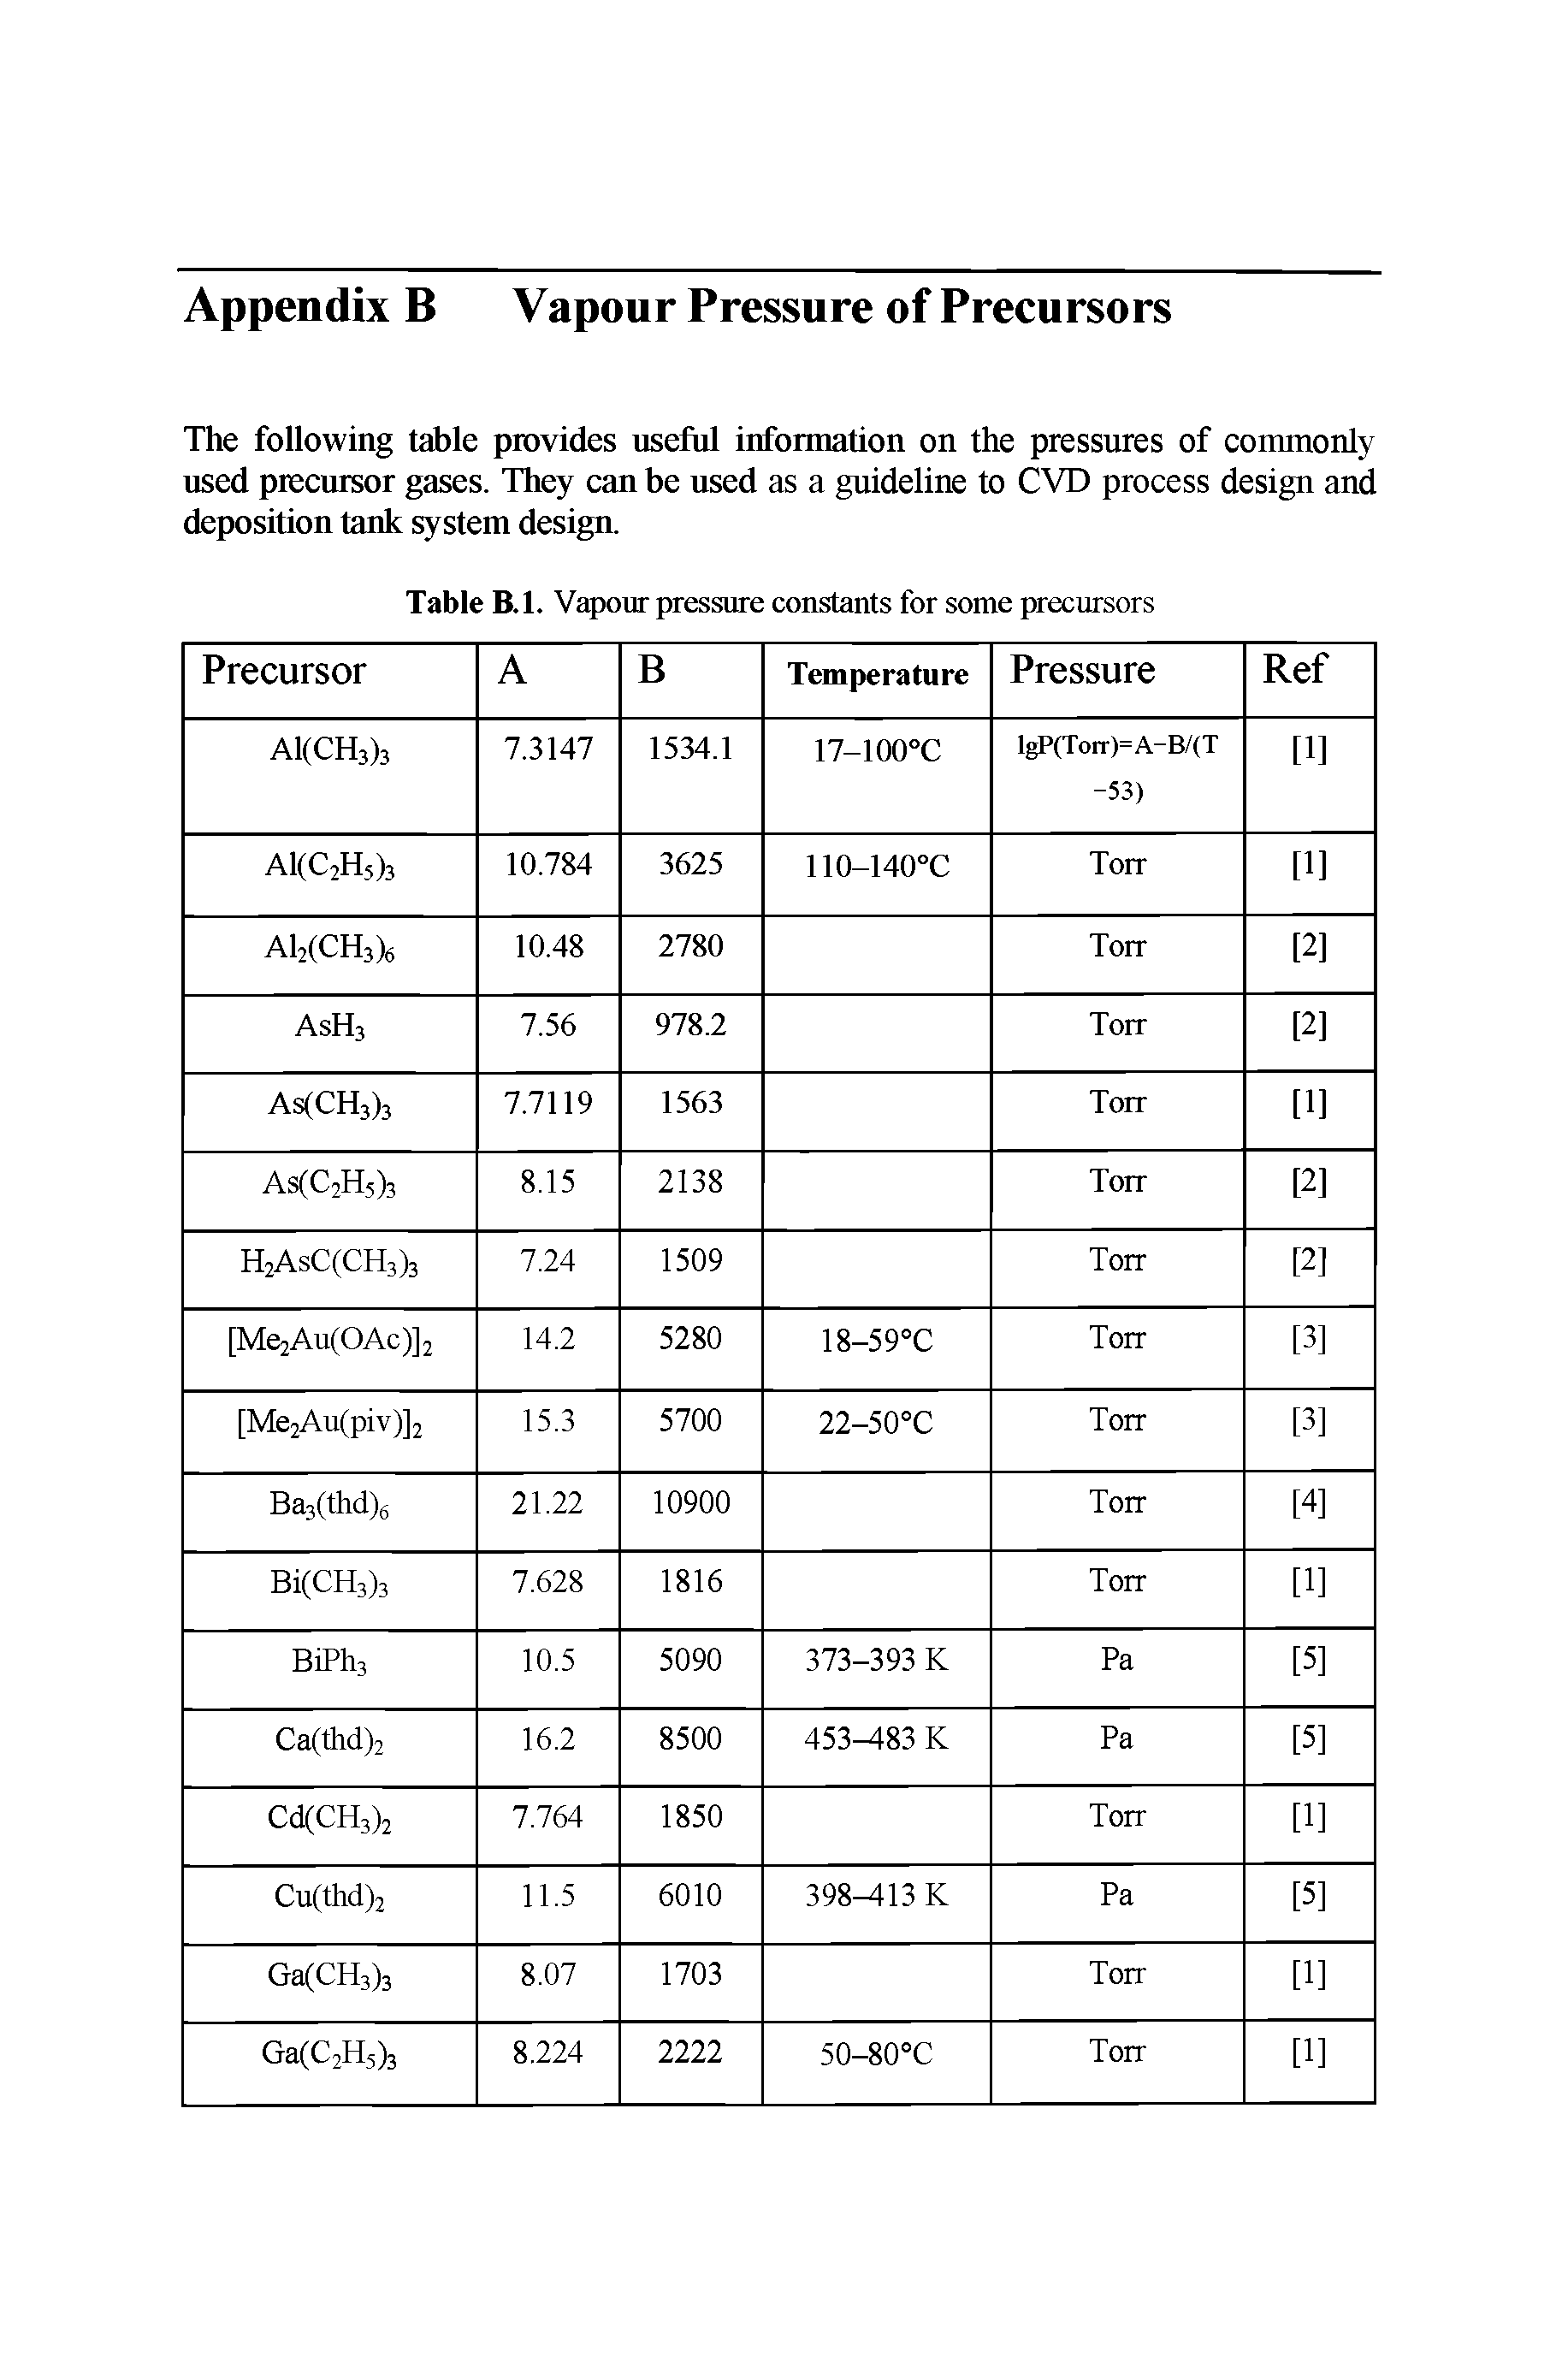 Table B.l. Vapour pressure constants for some precursors...